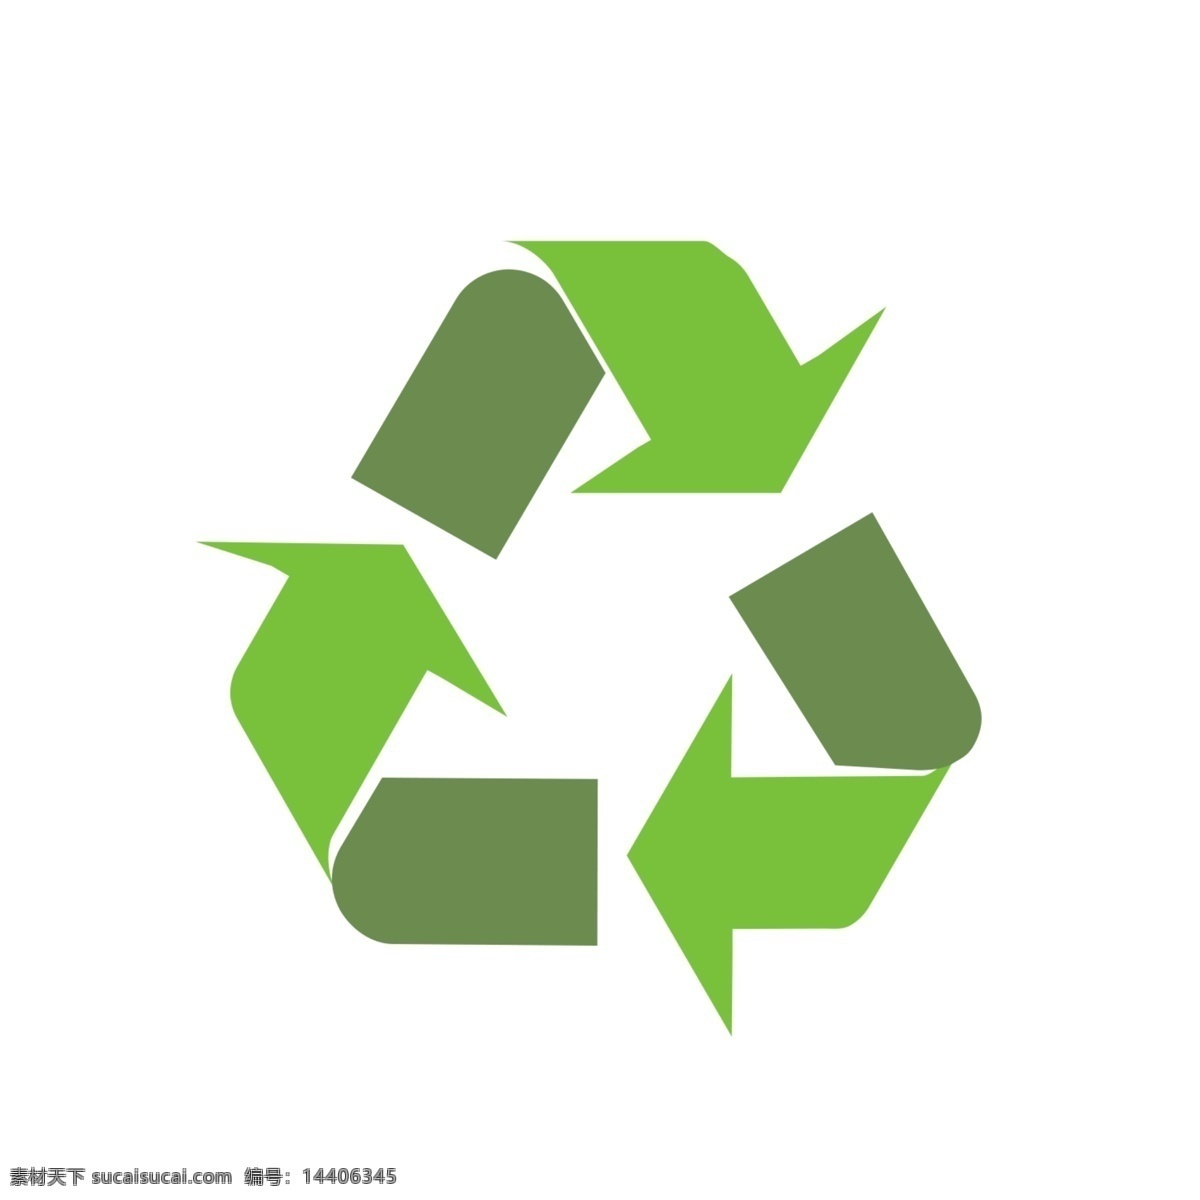 回收站图标 app 推软件图标